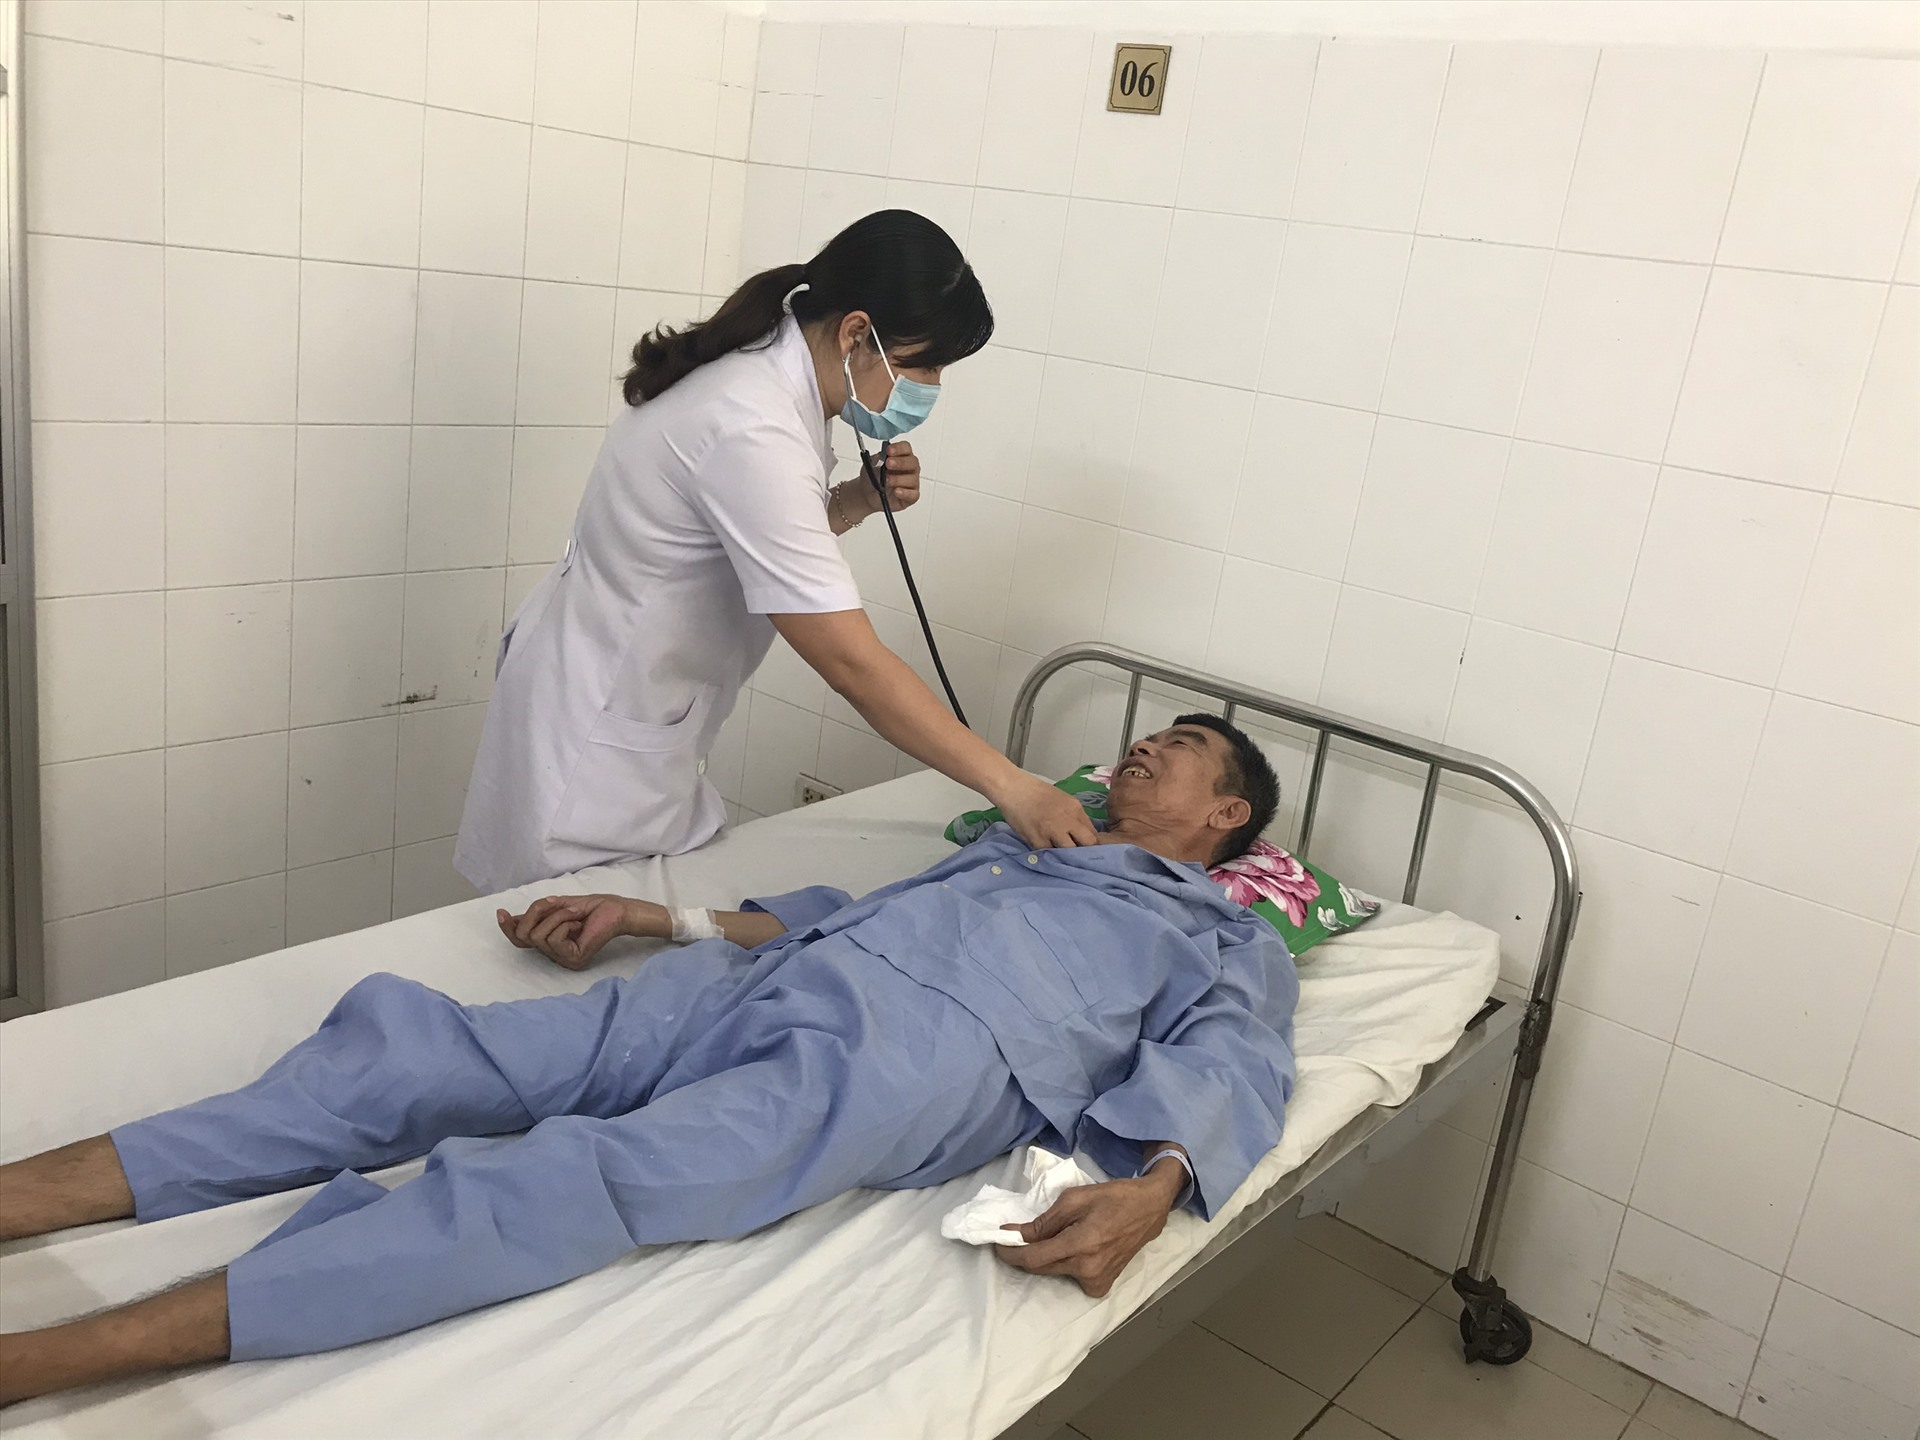 Tinh trạng sức khỏe của bệnh nhân sáng ngày 25.6 đã phục hồi: không sốt, đã giảm đau vùng cổ,....Ảnh: BVCC